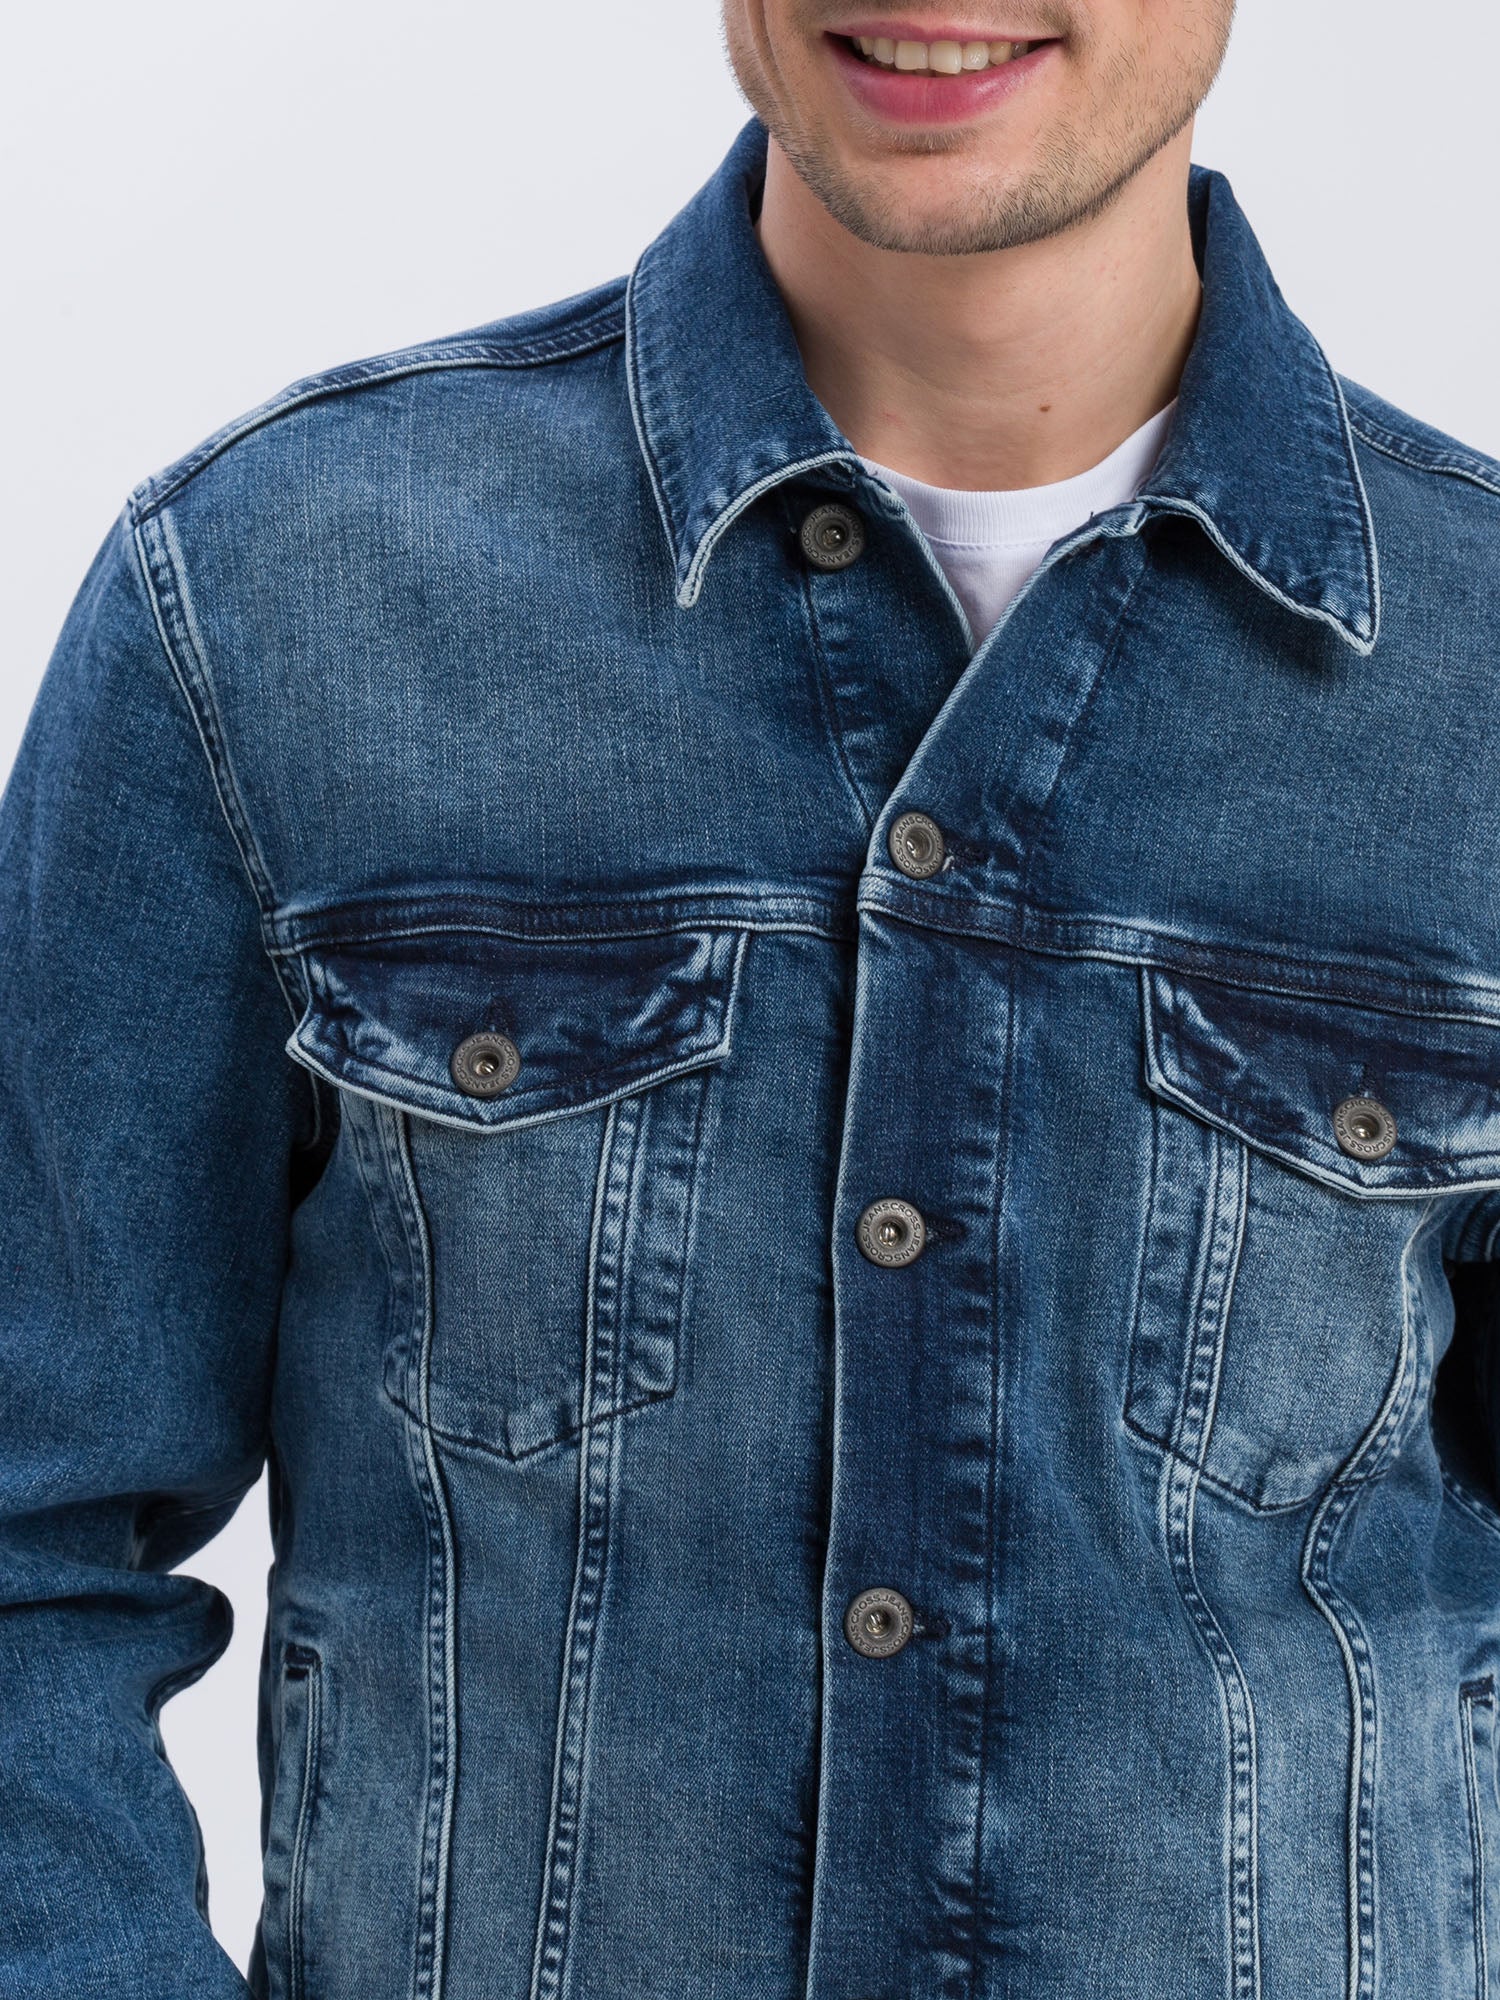 Cross | Regular Jeans Jacket | 017 MID BLUE USED